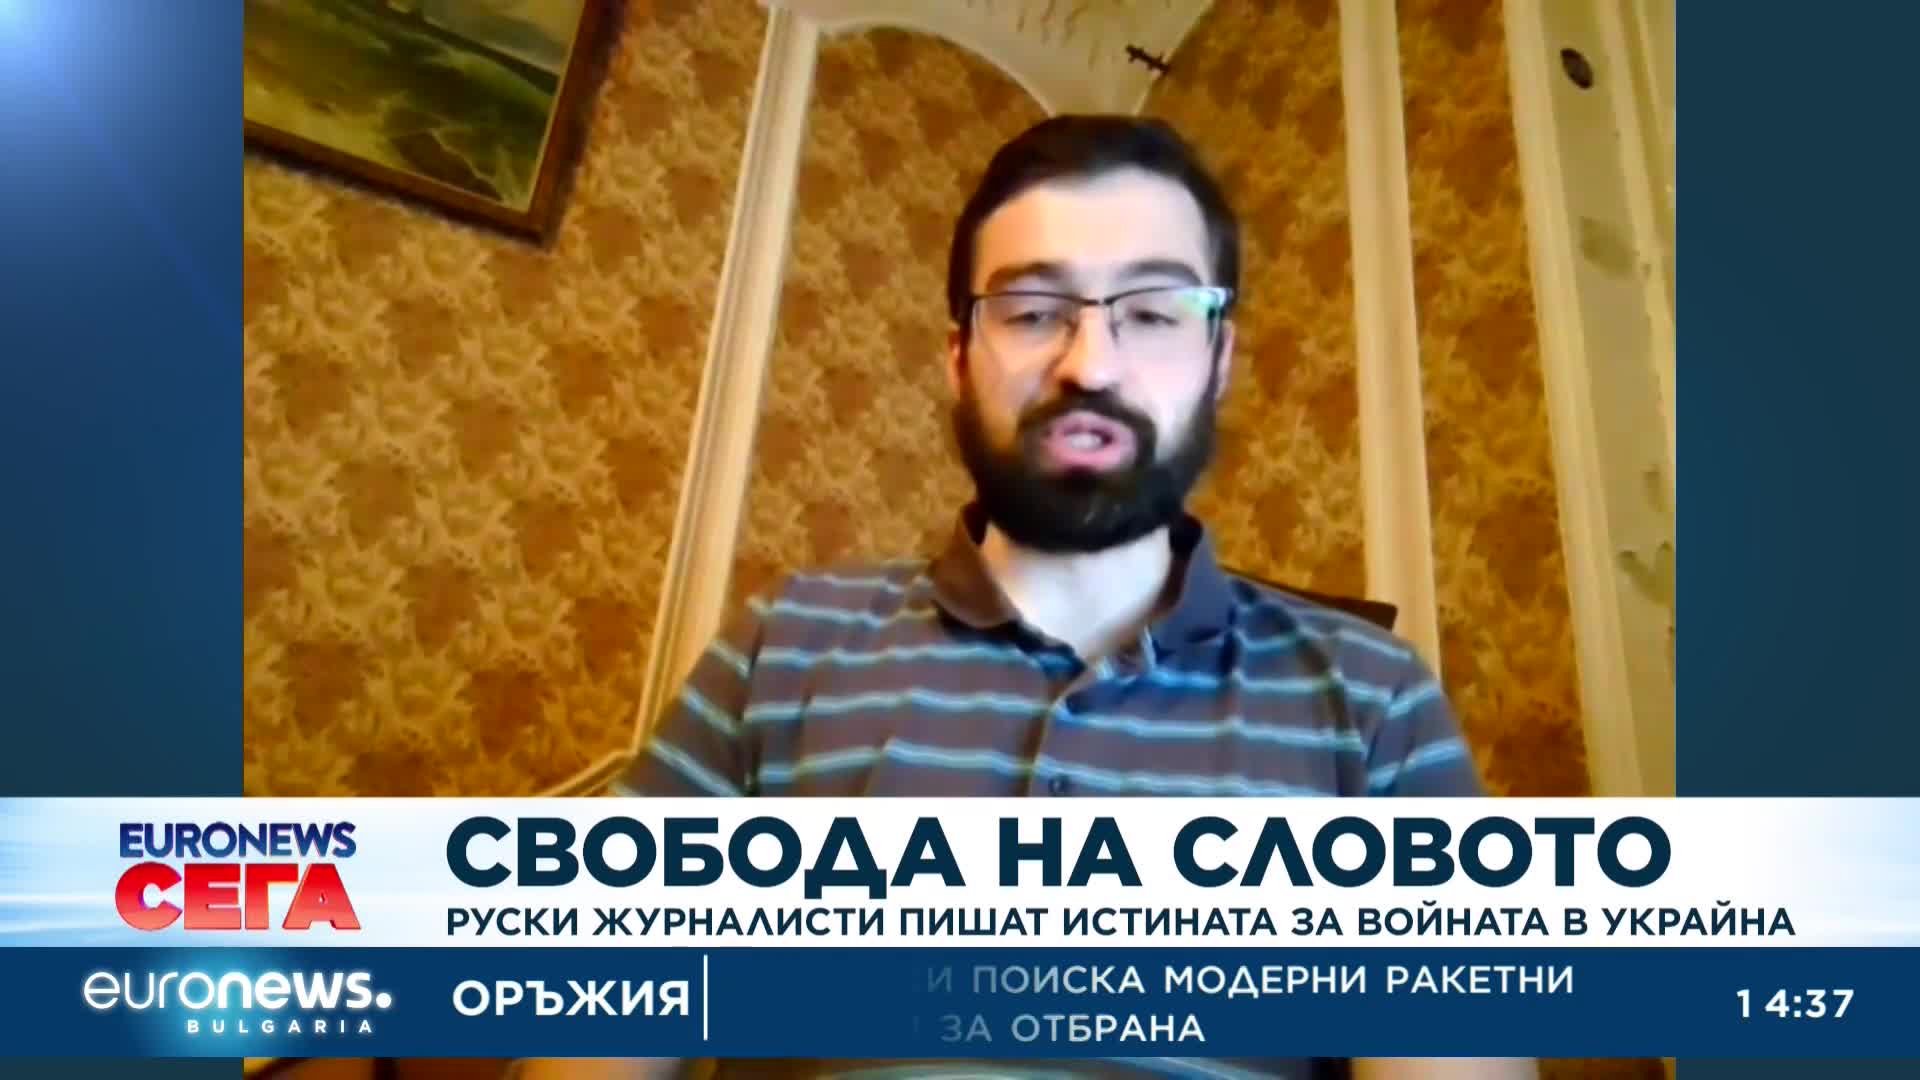 Руски журналисти пишат истината за войната в Украйна